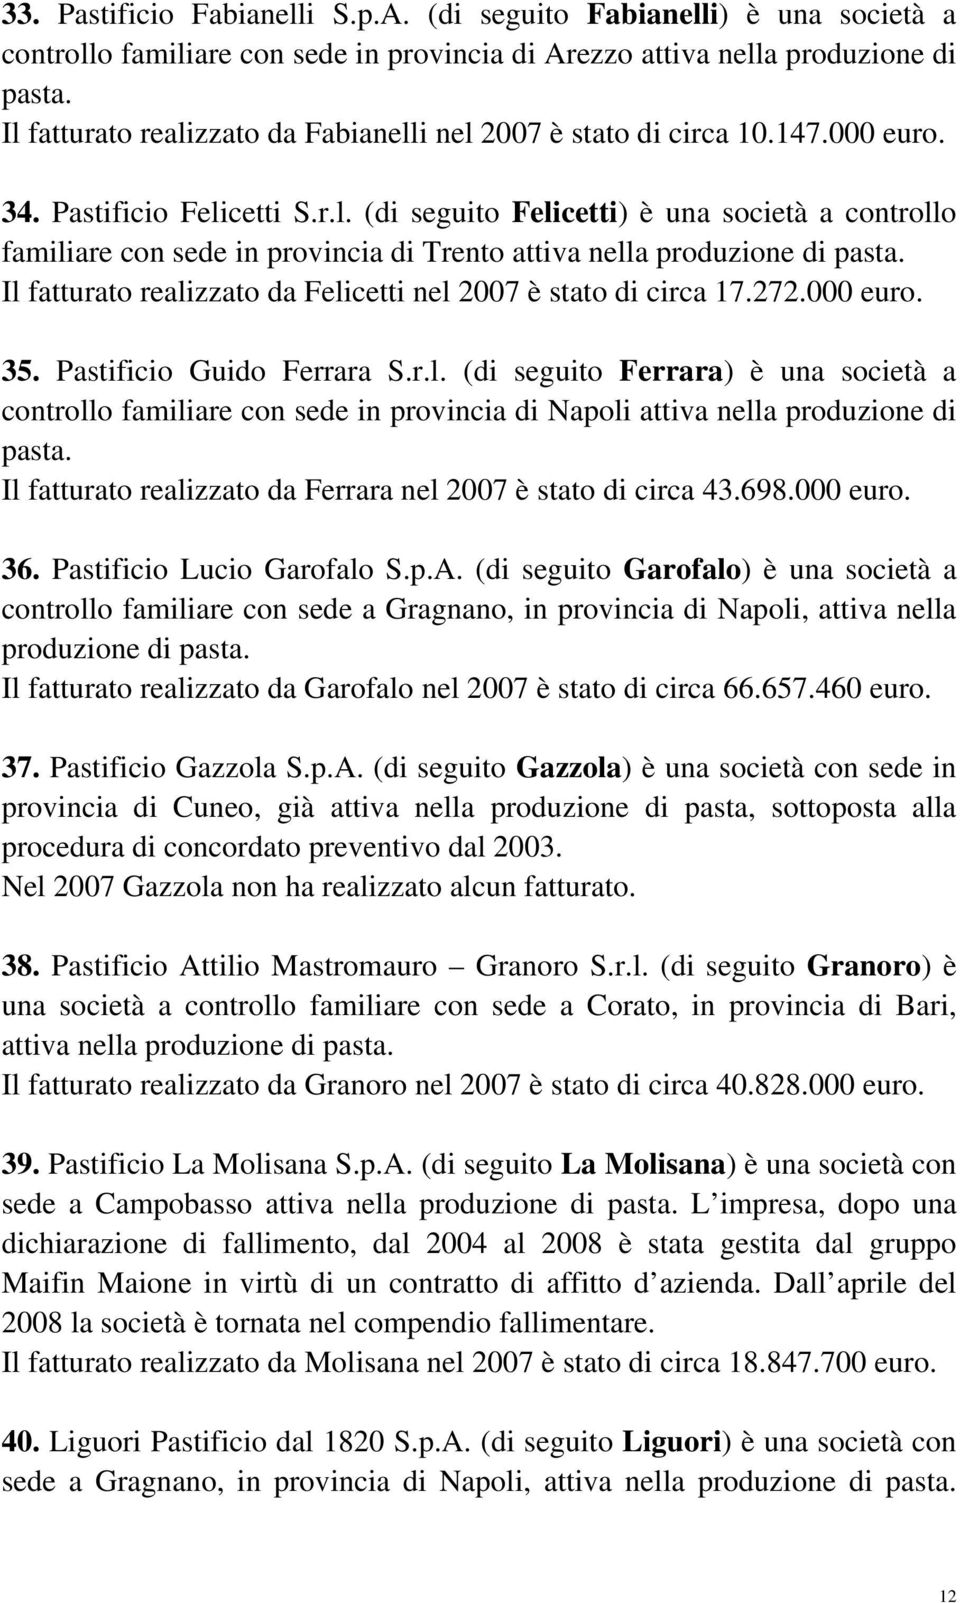 Il fatturato realizzato da Felicetti nel 2007 è stato di circa 17.272.000 euro. 35. Pastificio Guido Ferrara S.r.l. (di seguito Ferrara) è una società a controllo familiare con sede in provincia di Napoli attiva nella produzione di pasta.